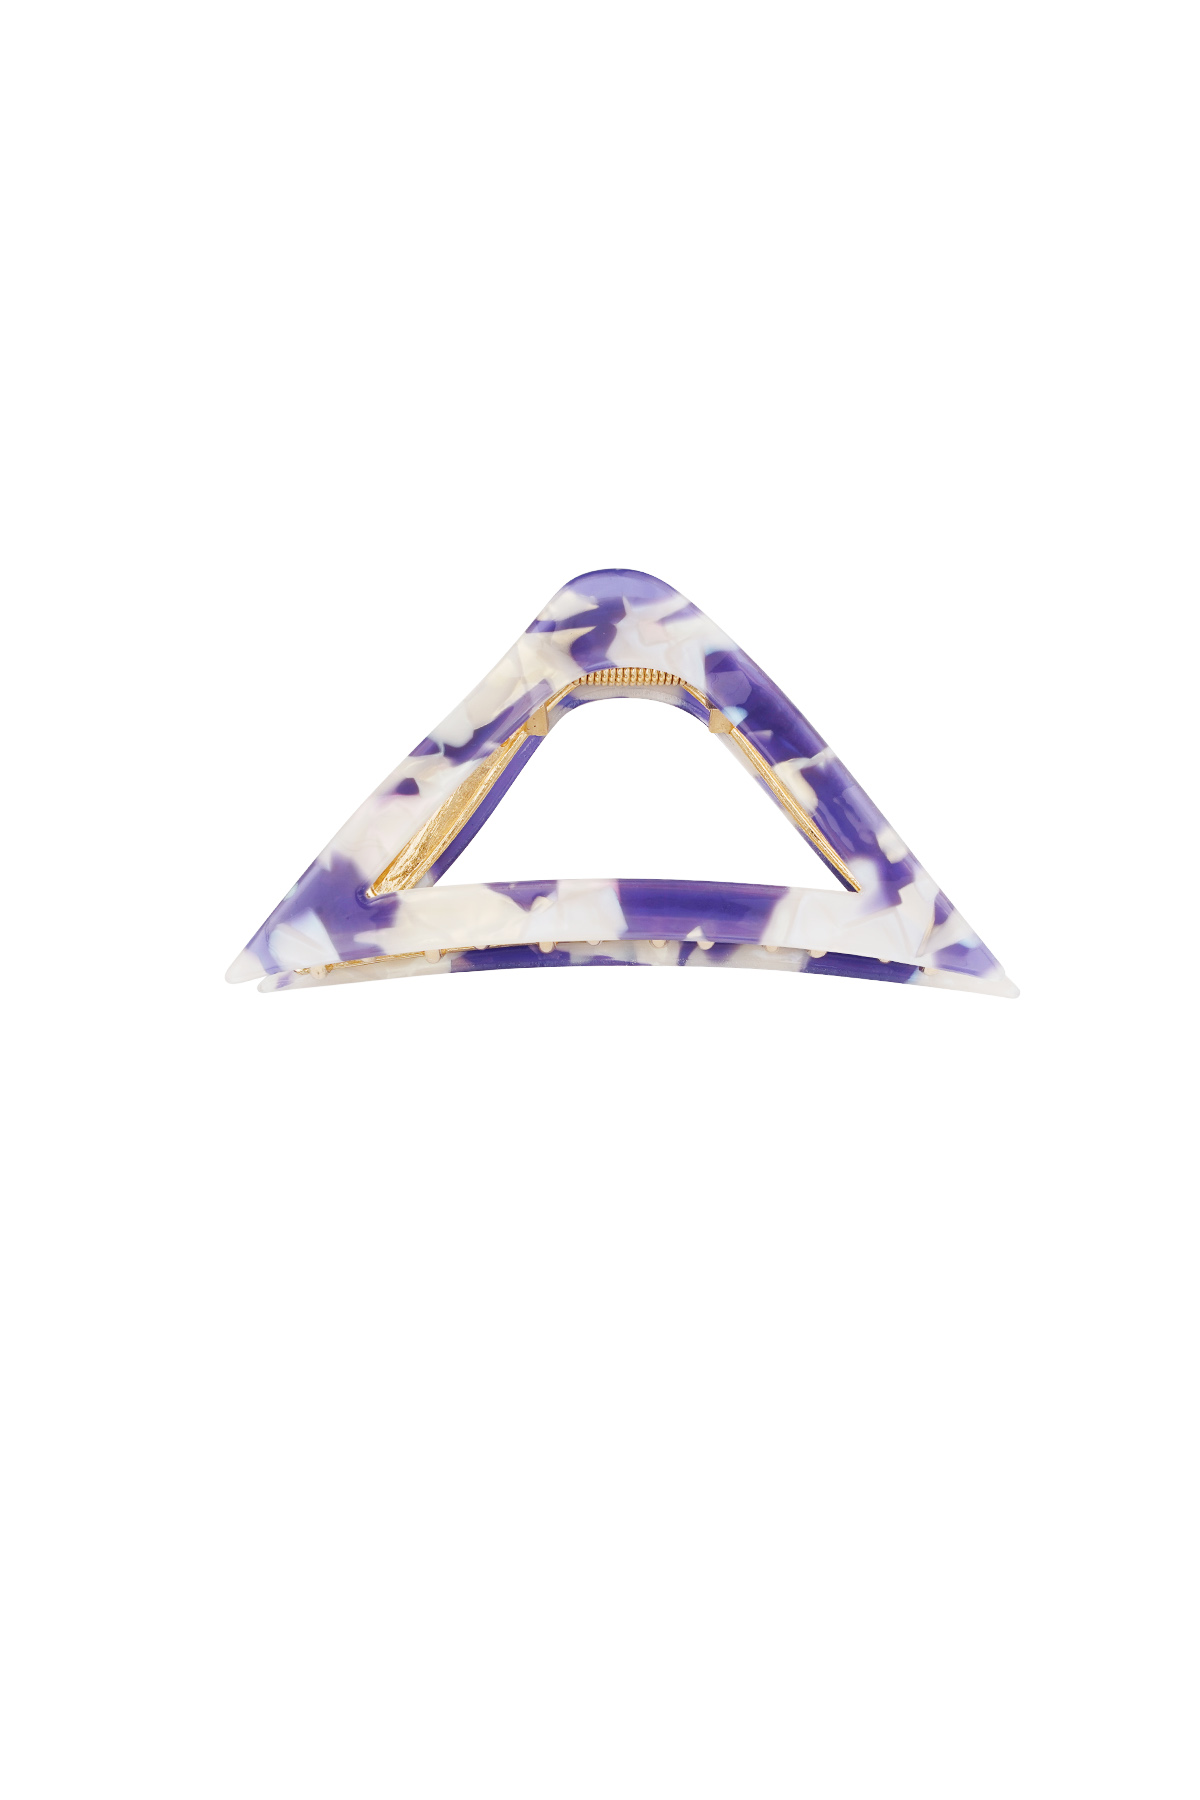 Fermaglio per capelli triangolare in marmo - viola 